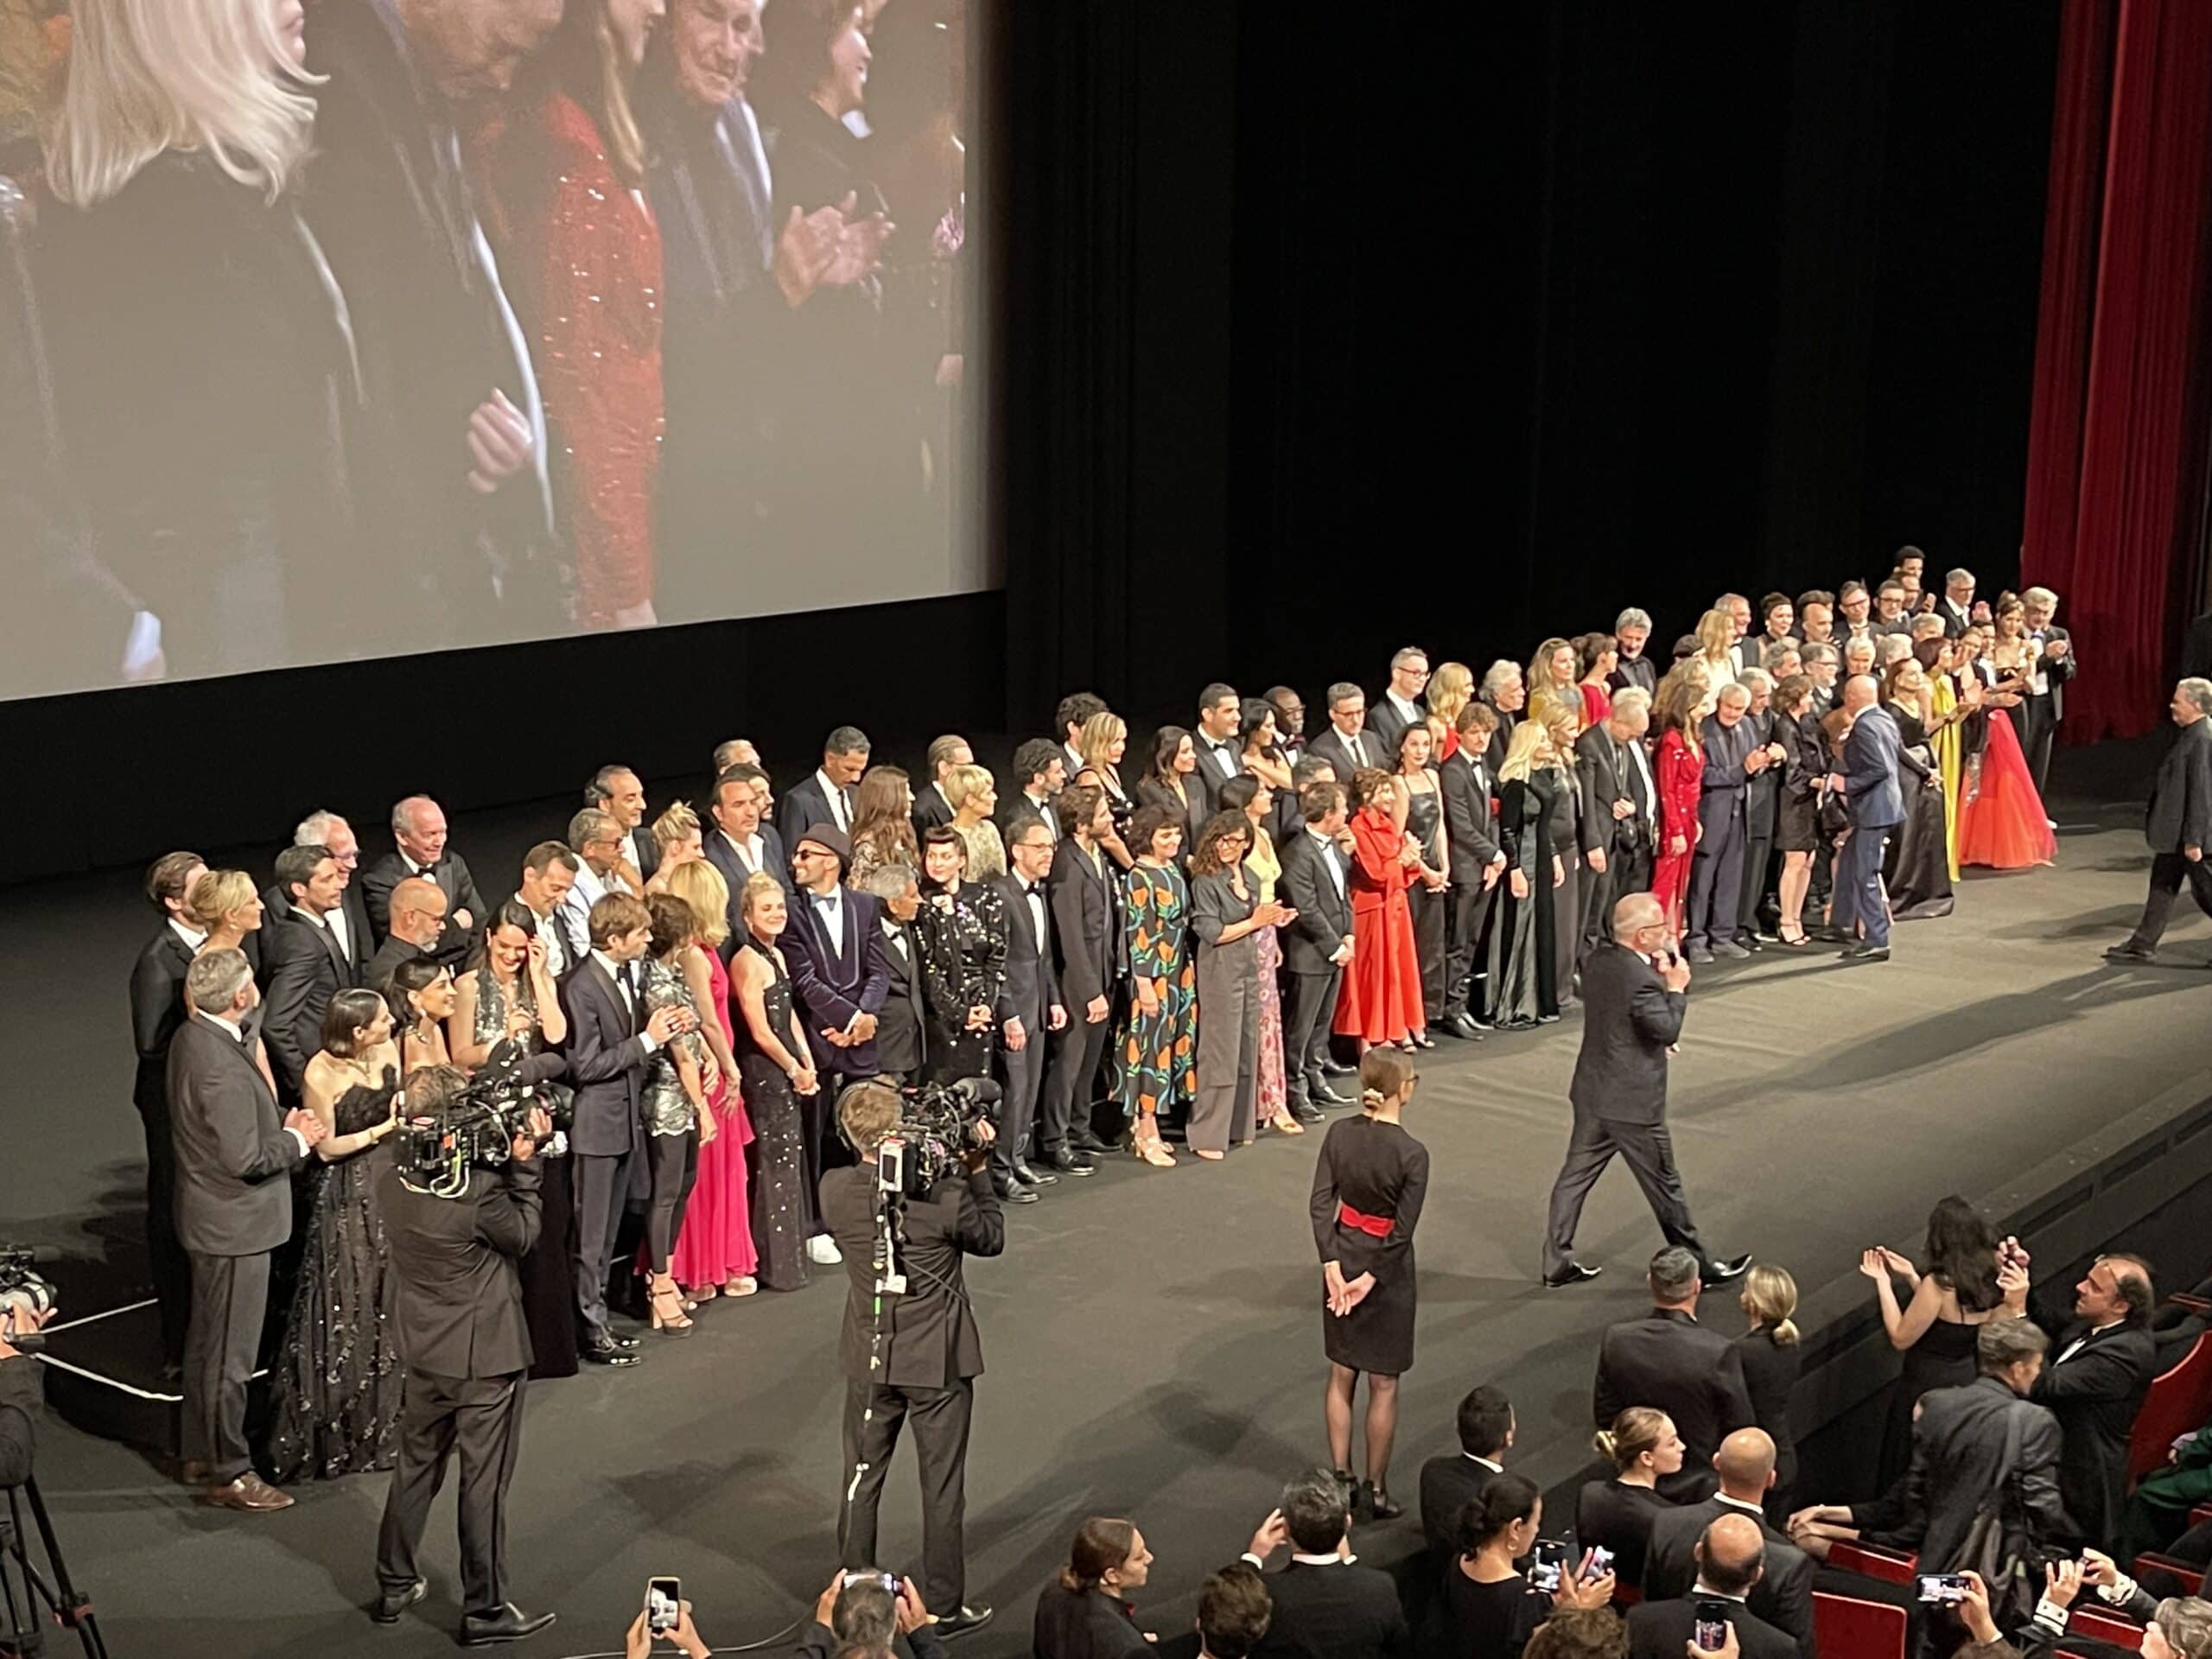 Galerie de photos du Festival de Cannes 2022